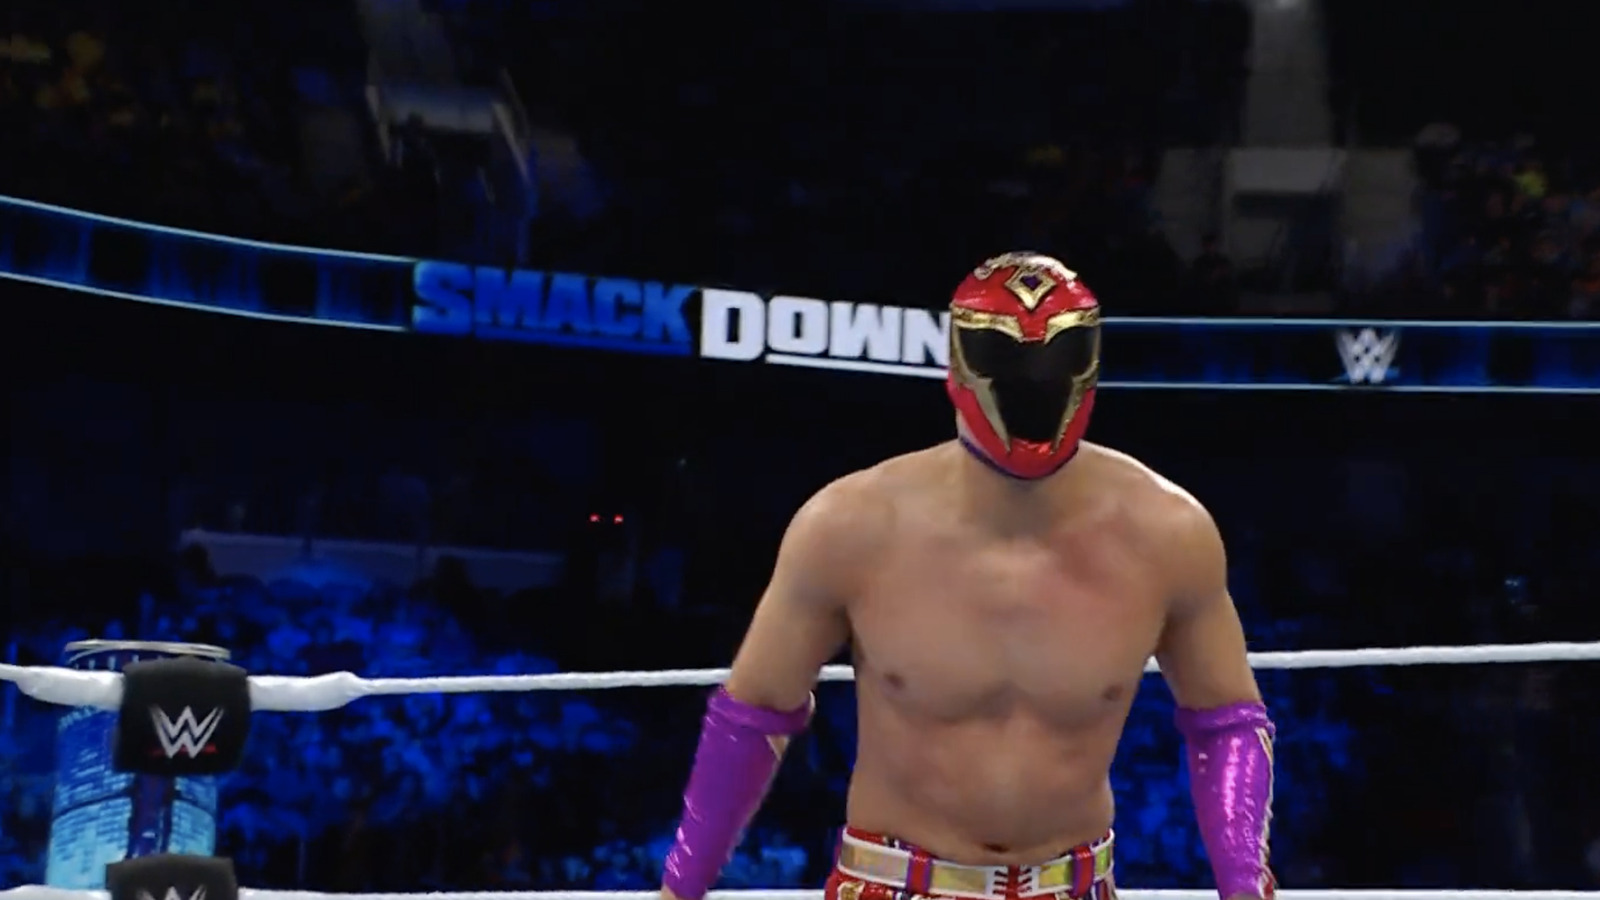 La estrella de WWE NXT hace su debut en el roster principal en una lucha contra Dragon Lee en WWE SmackDown